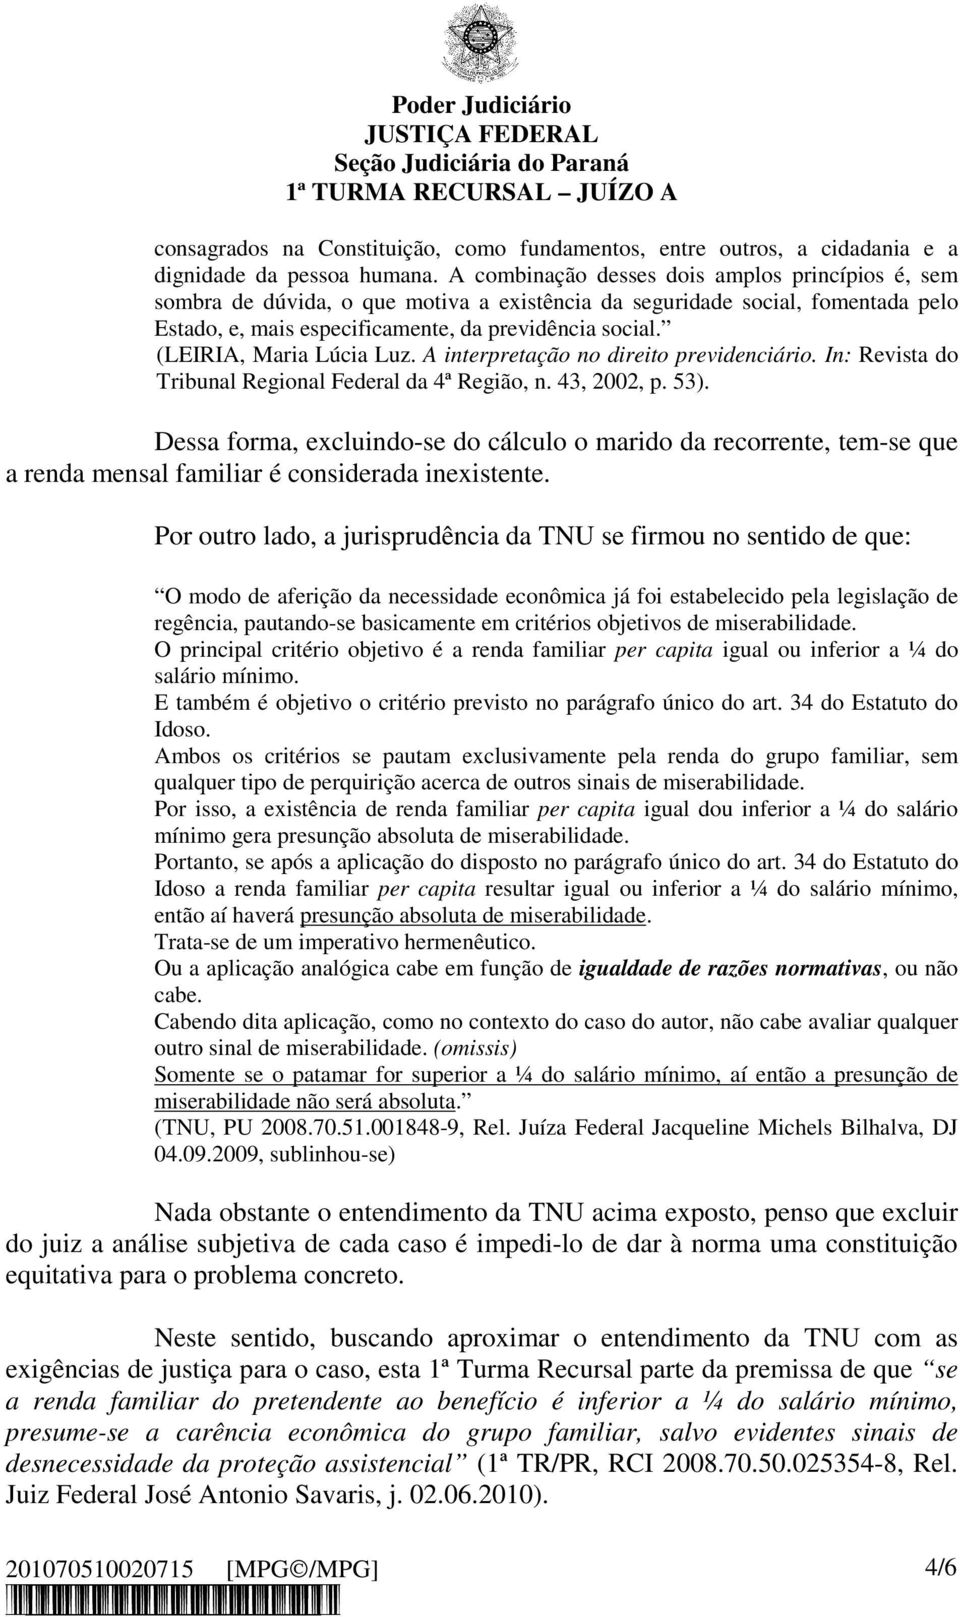 (LEIRIA, Maria Lúcia Luz. A interpretação no direito previdenciário. In: Revista do Tribunal Regional Federal da 4ª Região, n. 43, 2002, p. 53).